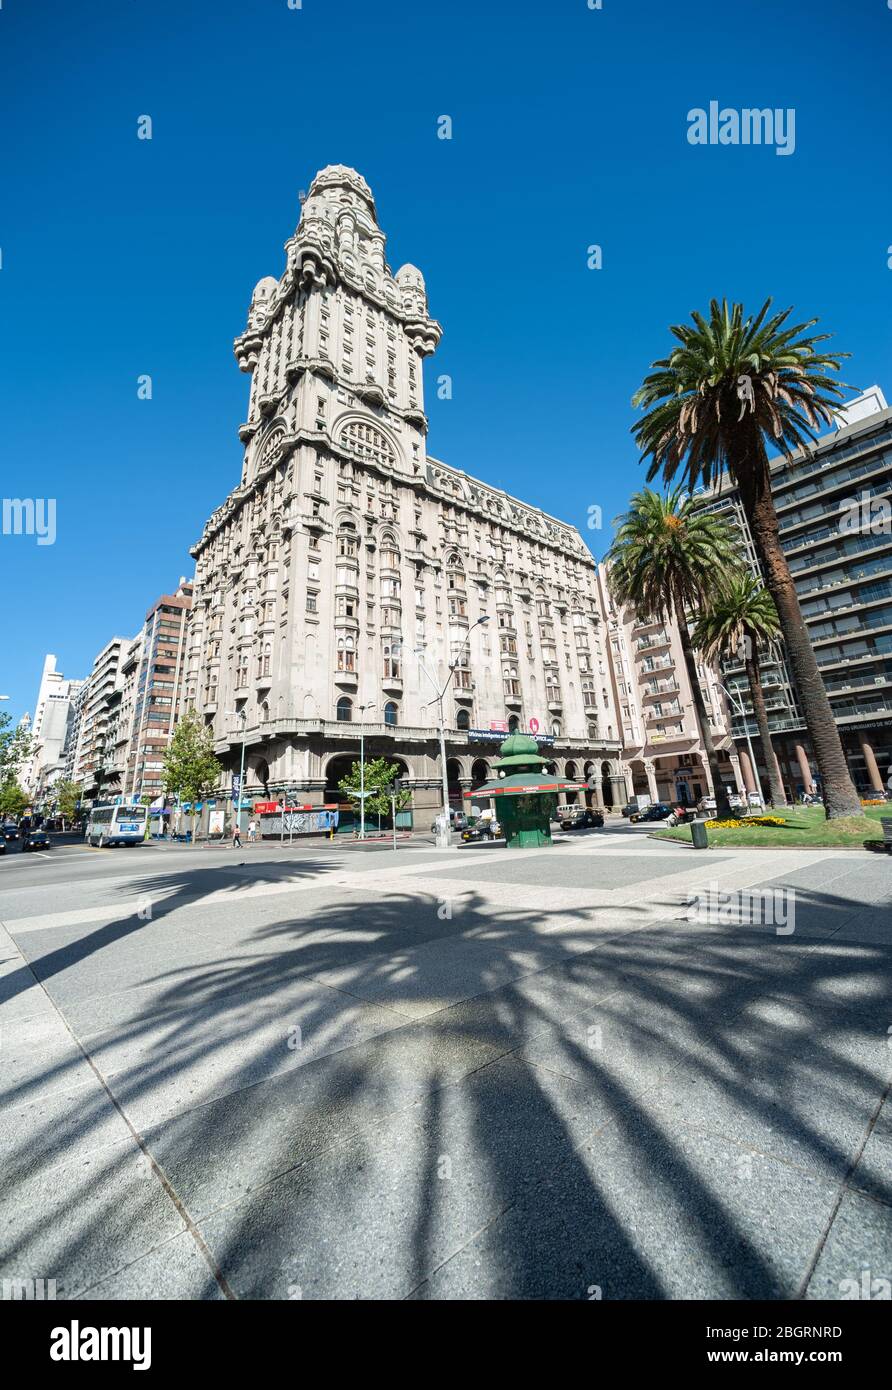 Montevideo, Uruguay - 10 mars 2013 : vue sur la place principale de la ville et un bâtiment emblématique de l'Amérique du Sud, le palais Salvo Banque D'Images